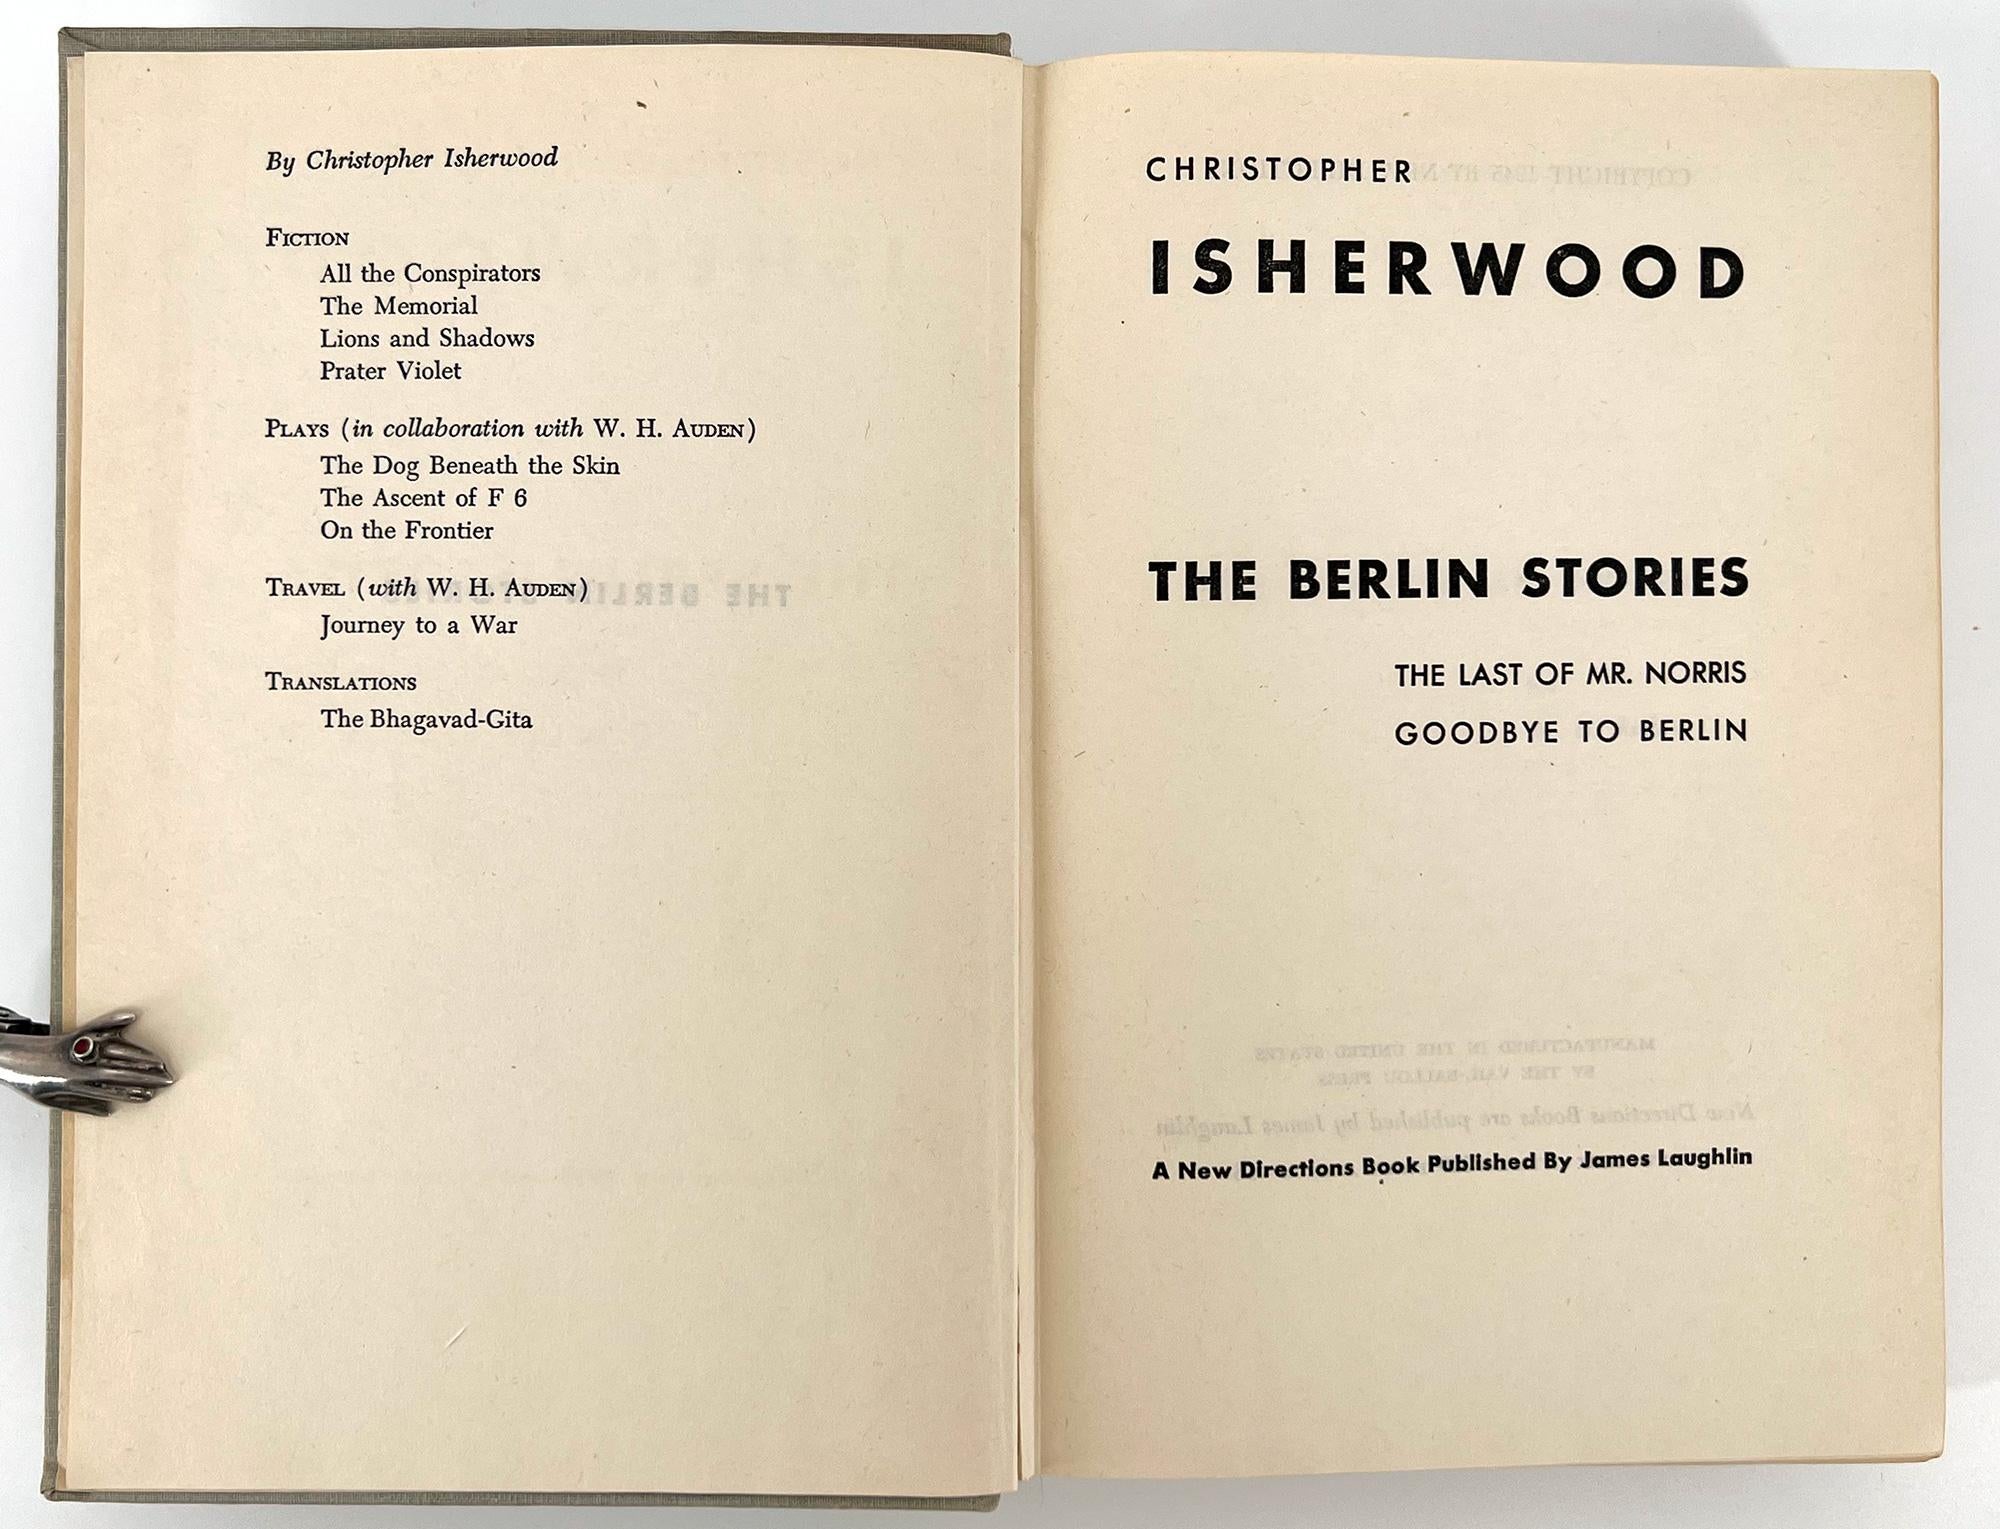 Cette édition américaine des deux romans d'Isherwood [The Last of Mr. Norris et Goodbye Berlin], qui se déroulent dans le Berlin de l'époque de Weimar, a été publiée à l'origine par Hogarth Press (1935 et 1939). Elles forment la base du film